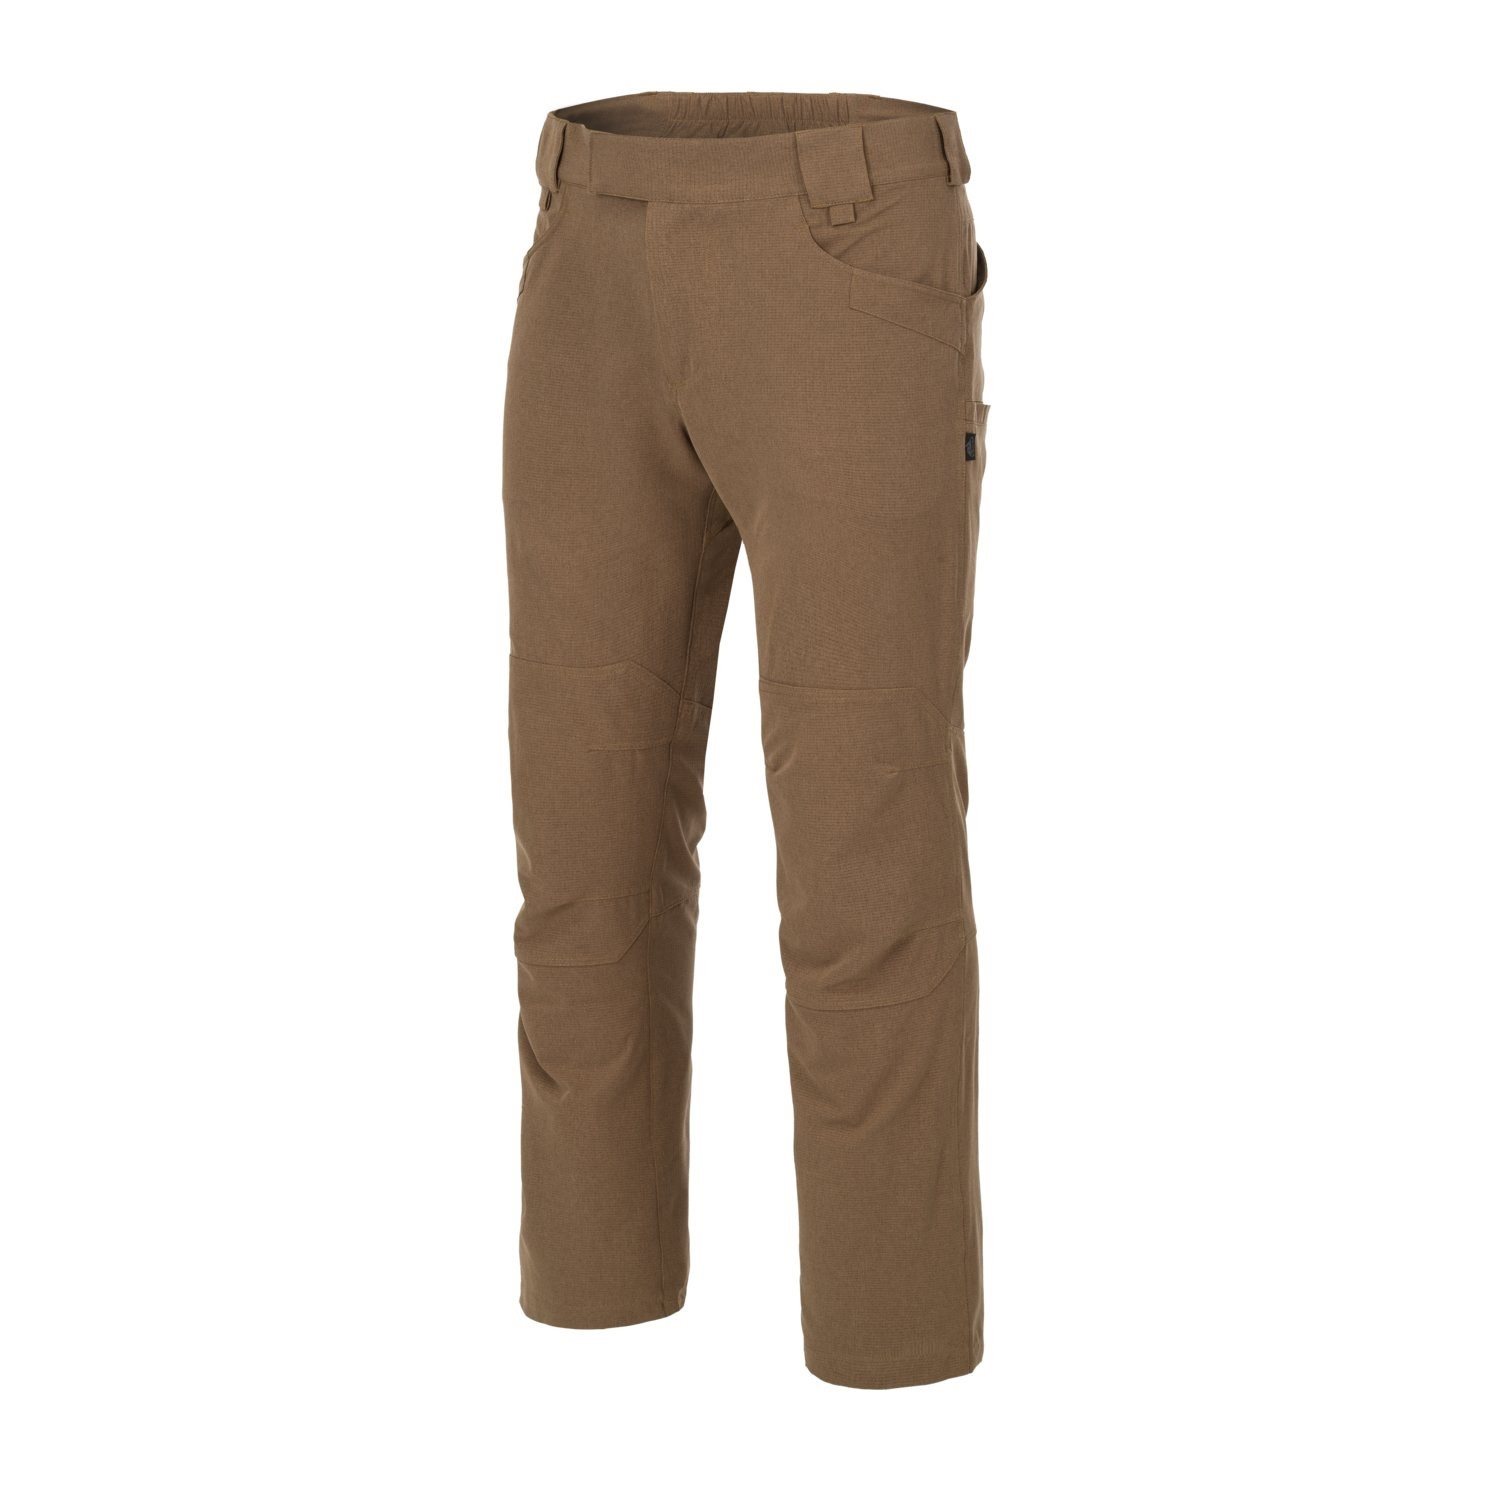 Kalhoty TREKKING AeroTech® MUD BROWN - zvìtšit obrázek